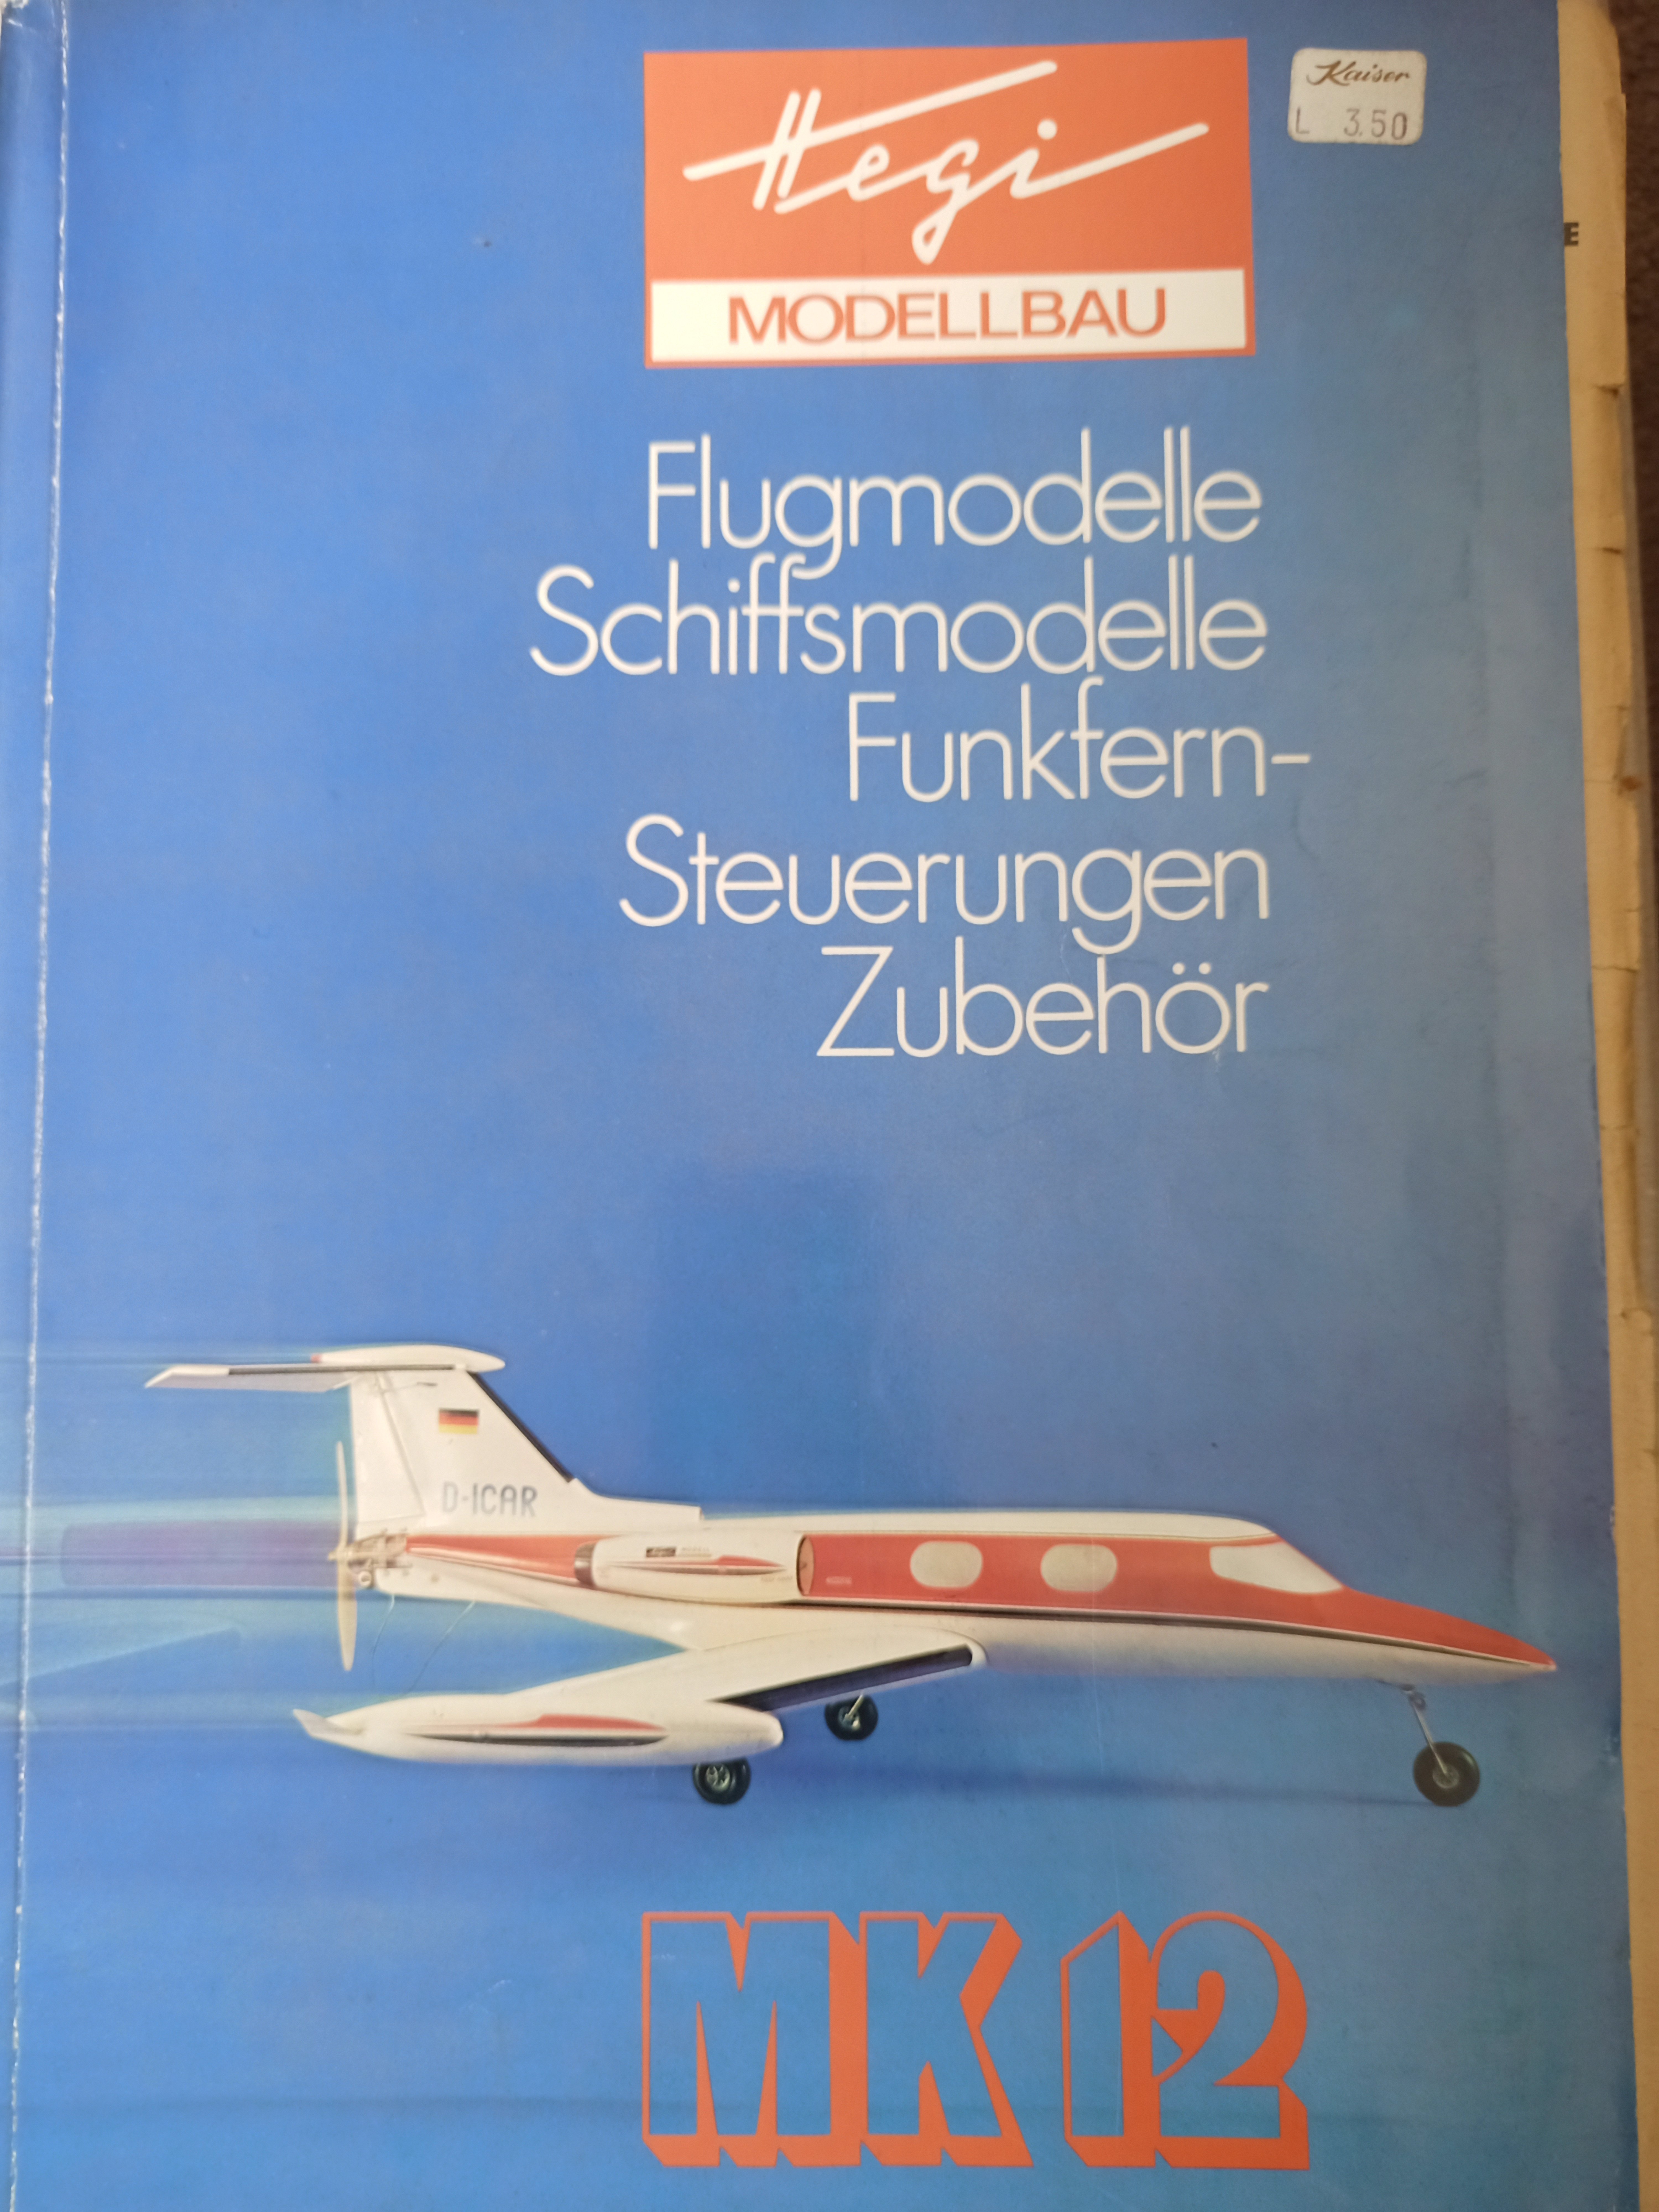 Gesamtkatalog Schuco Hegi 1974 (Deutsches Segelflugmuseum mit Modellflug CC BY-NC-SA)